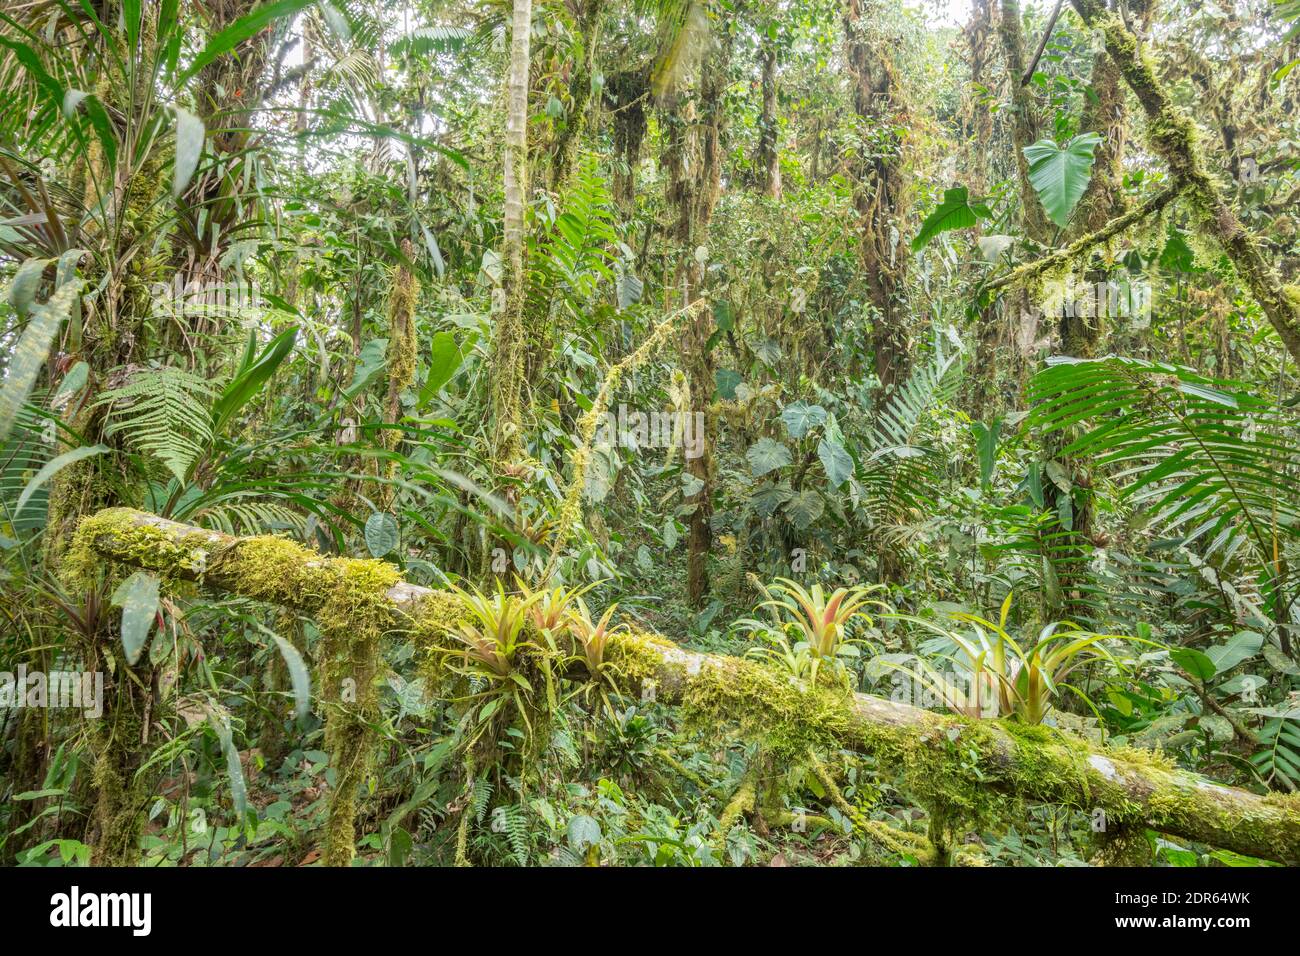 Das Innere des Bergregenwaldes (Nebelwald) im biovielfältigen Los Cedros Reservat im Westen Ecuadors. Boomeliaden auf einem Ast im Vordergrund. Stockfoto